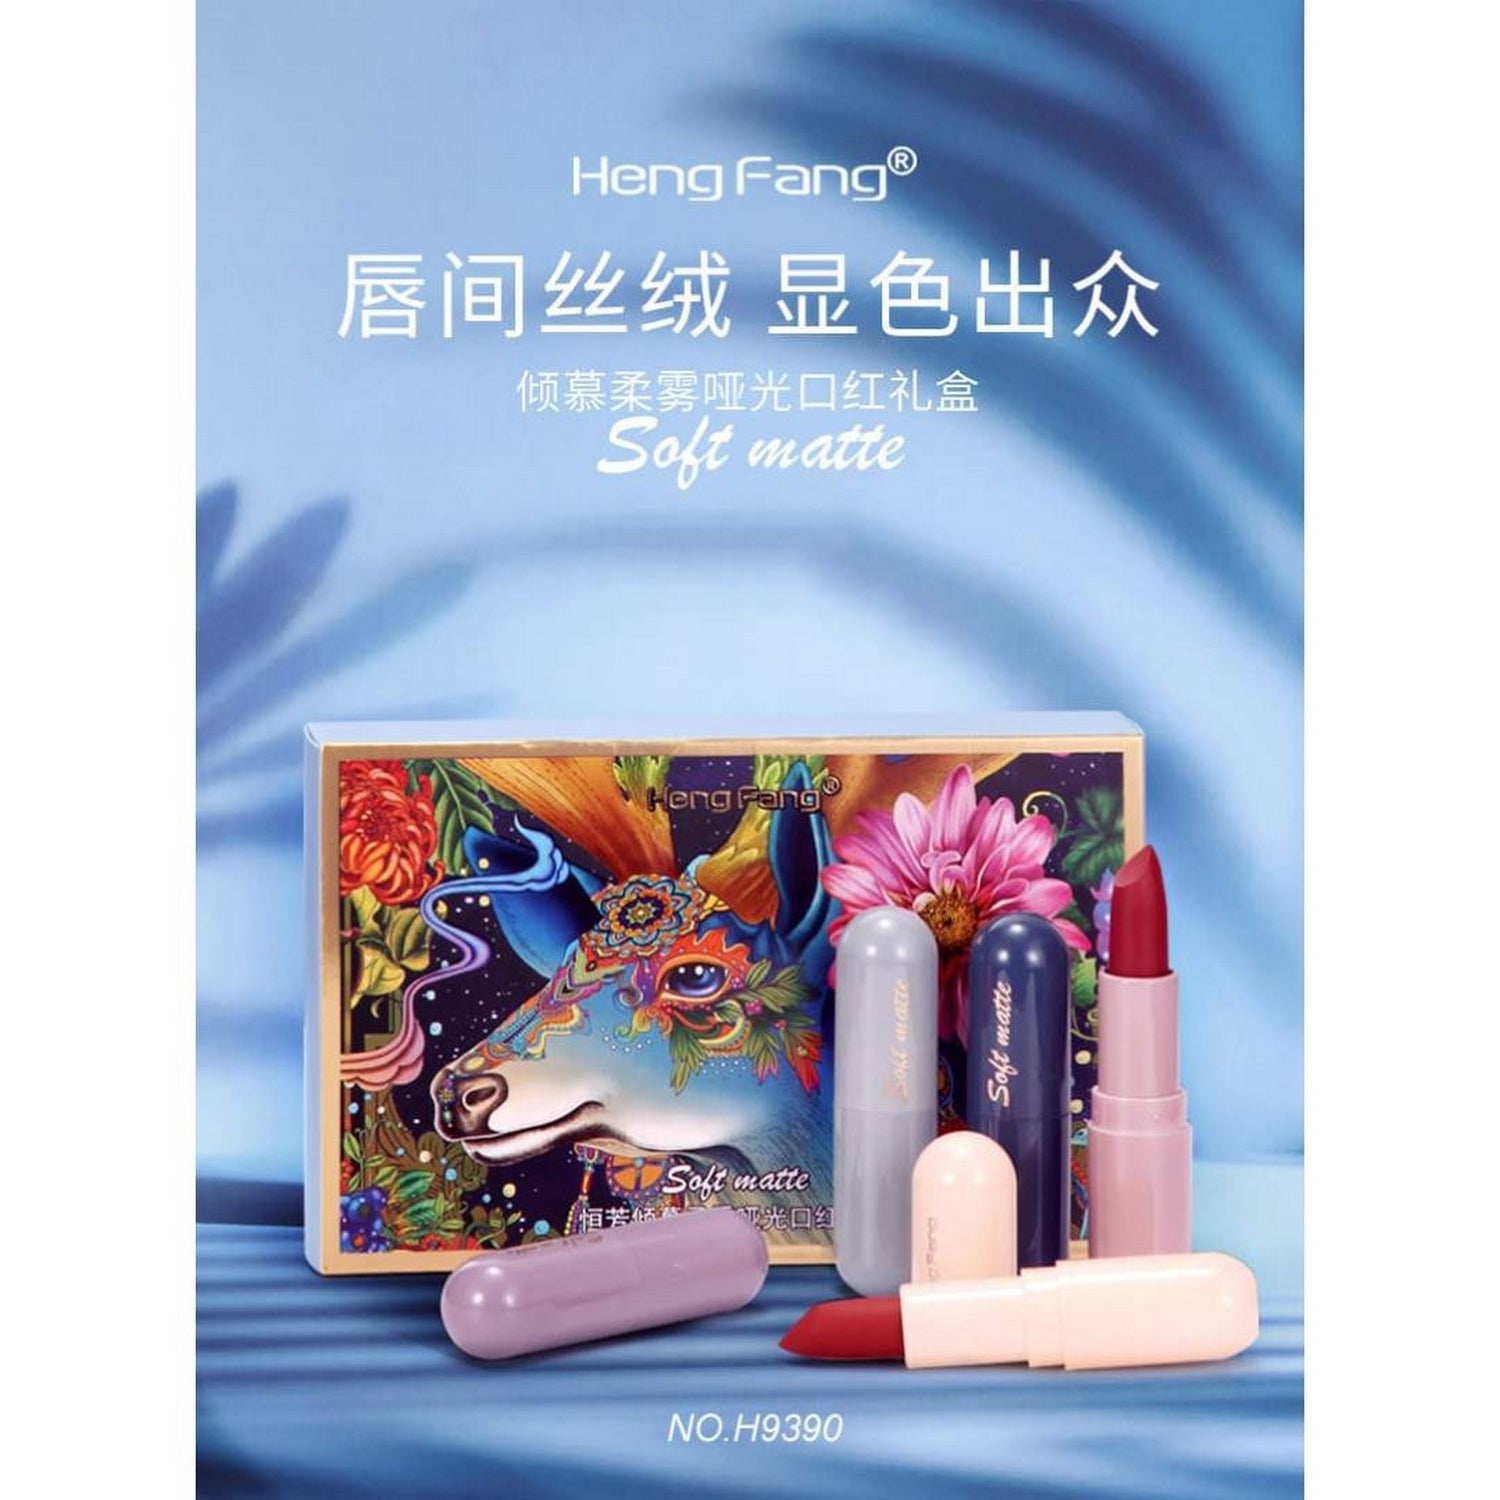 HengFang Soft Matte Lipstick Set - FlyingCart.pk